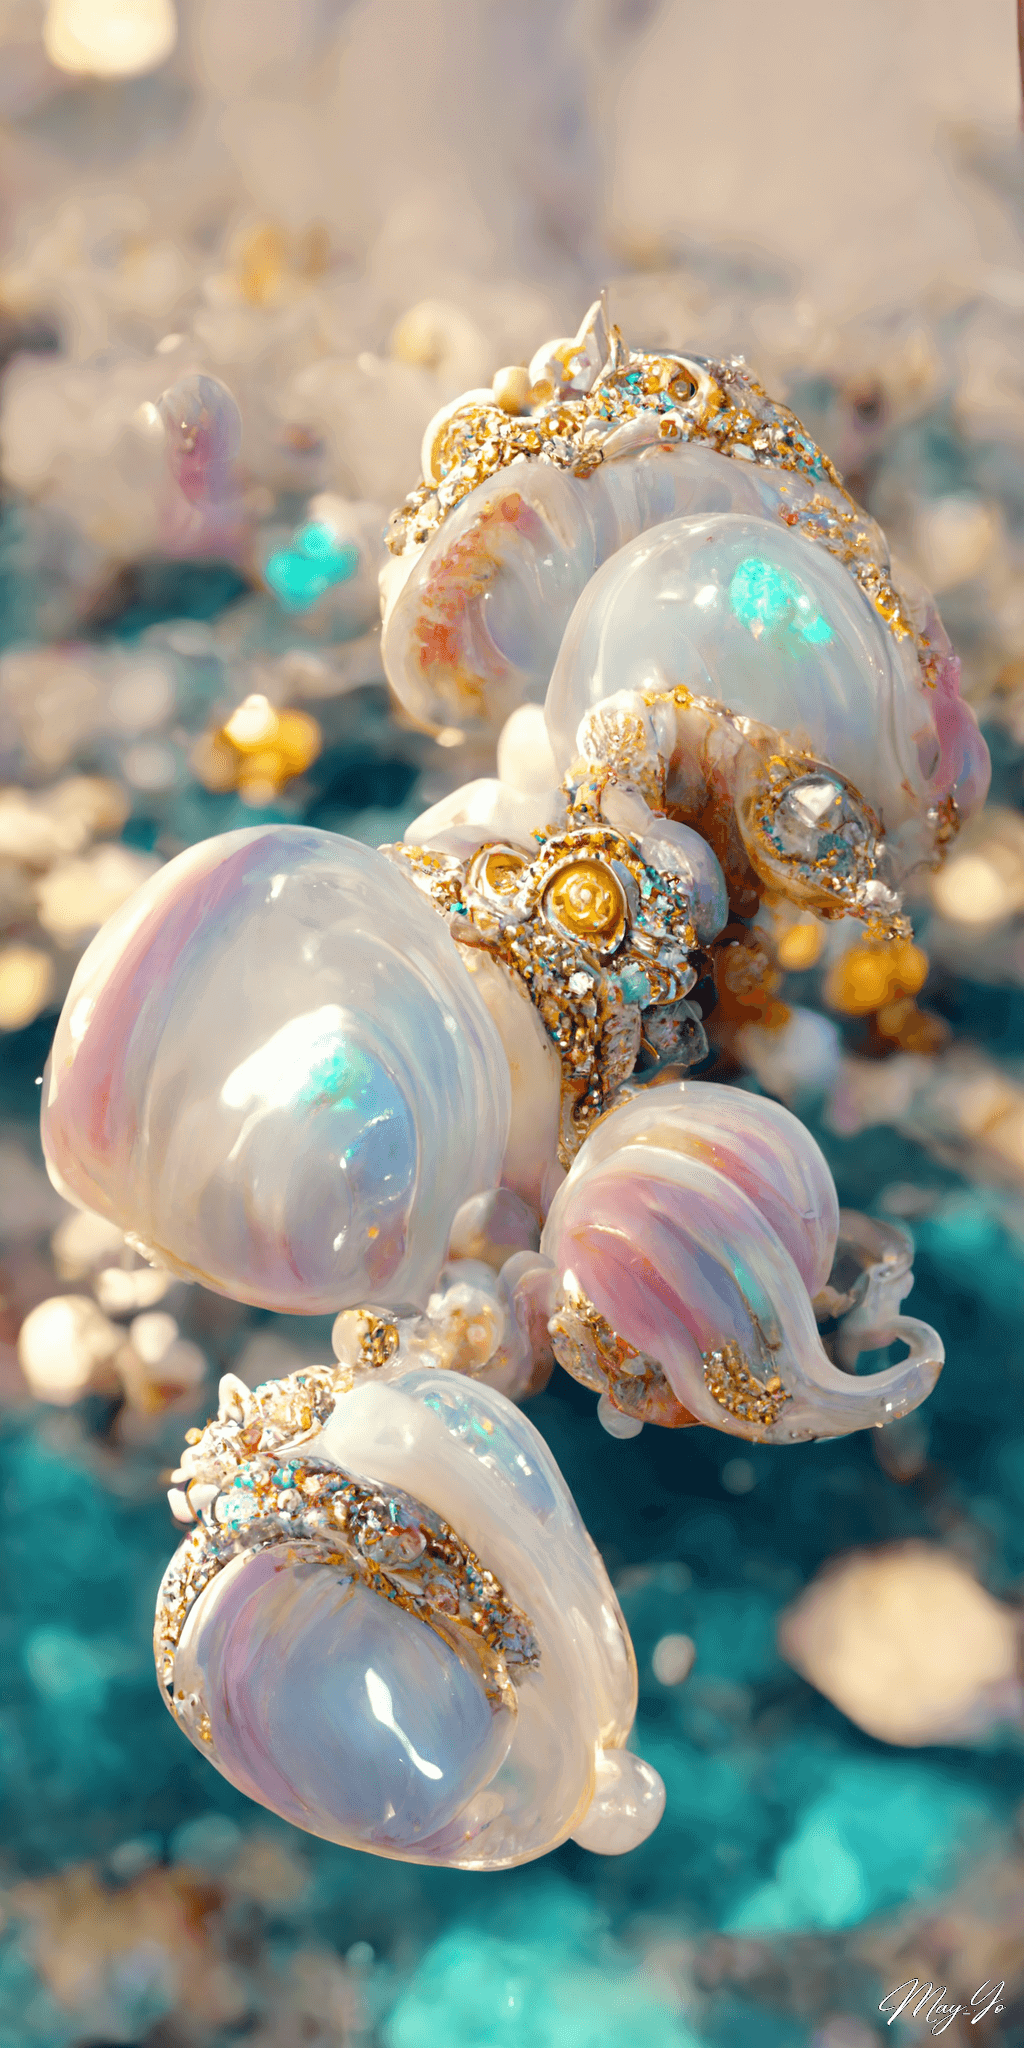 人魚をイメージしたマーメイド風ジュエリーのイラスト 輝く貝殻の宝石の壁紙 ゴールドをあしらったジュエリー イラスト AIイラスト待受 縦長画像 mermaid jewerly illustration gold and shell pearl luxery